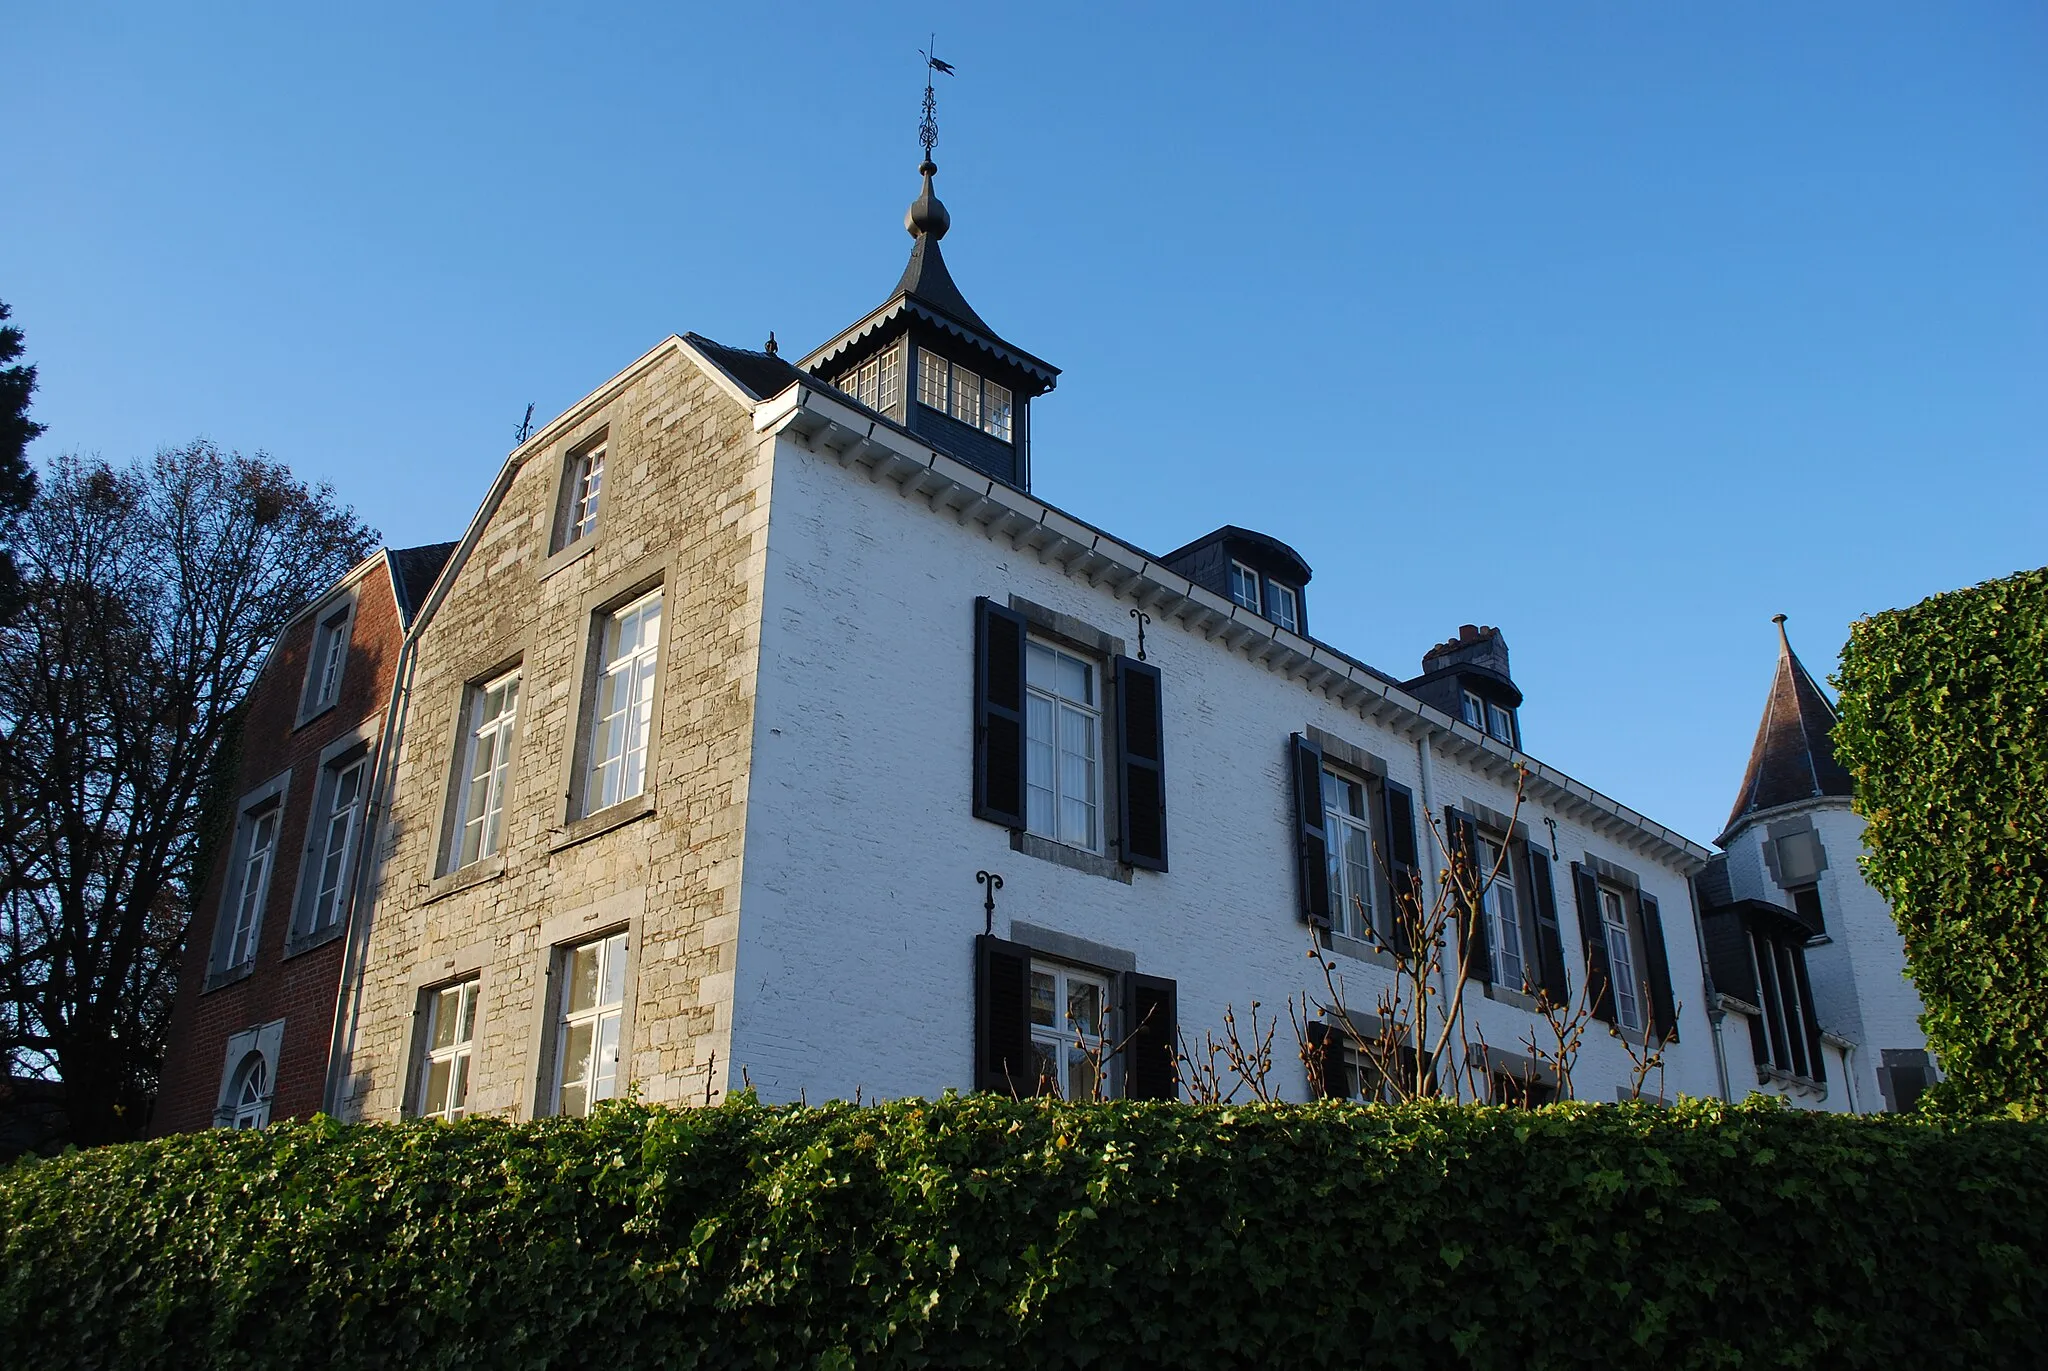 Photo showing: Château-ferme de Strivay, vue de Strivay, hameau de la commune de Neupré (dans la province de Liège, en Belgique).